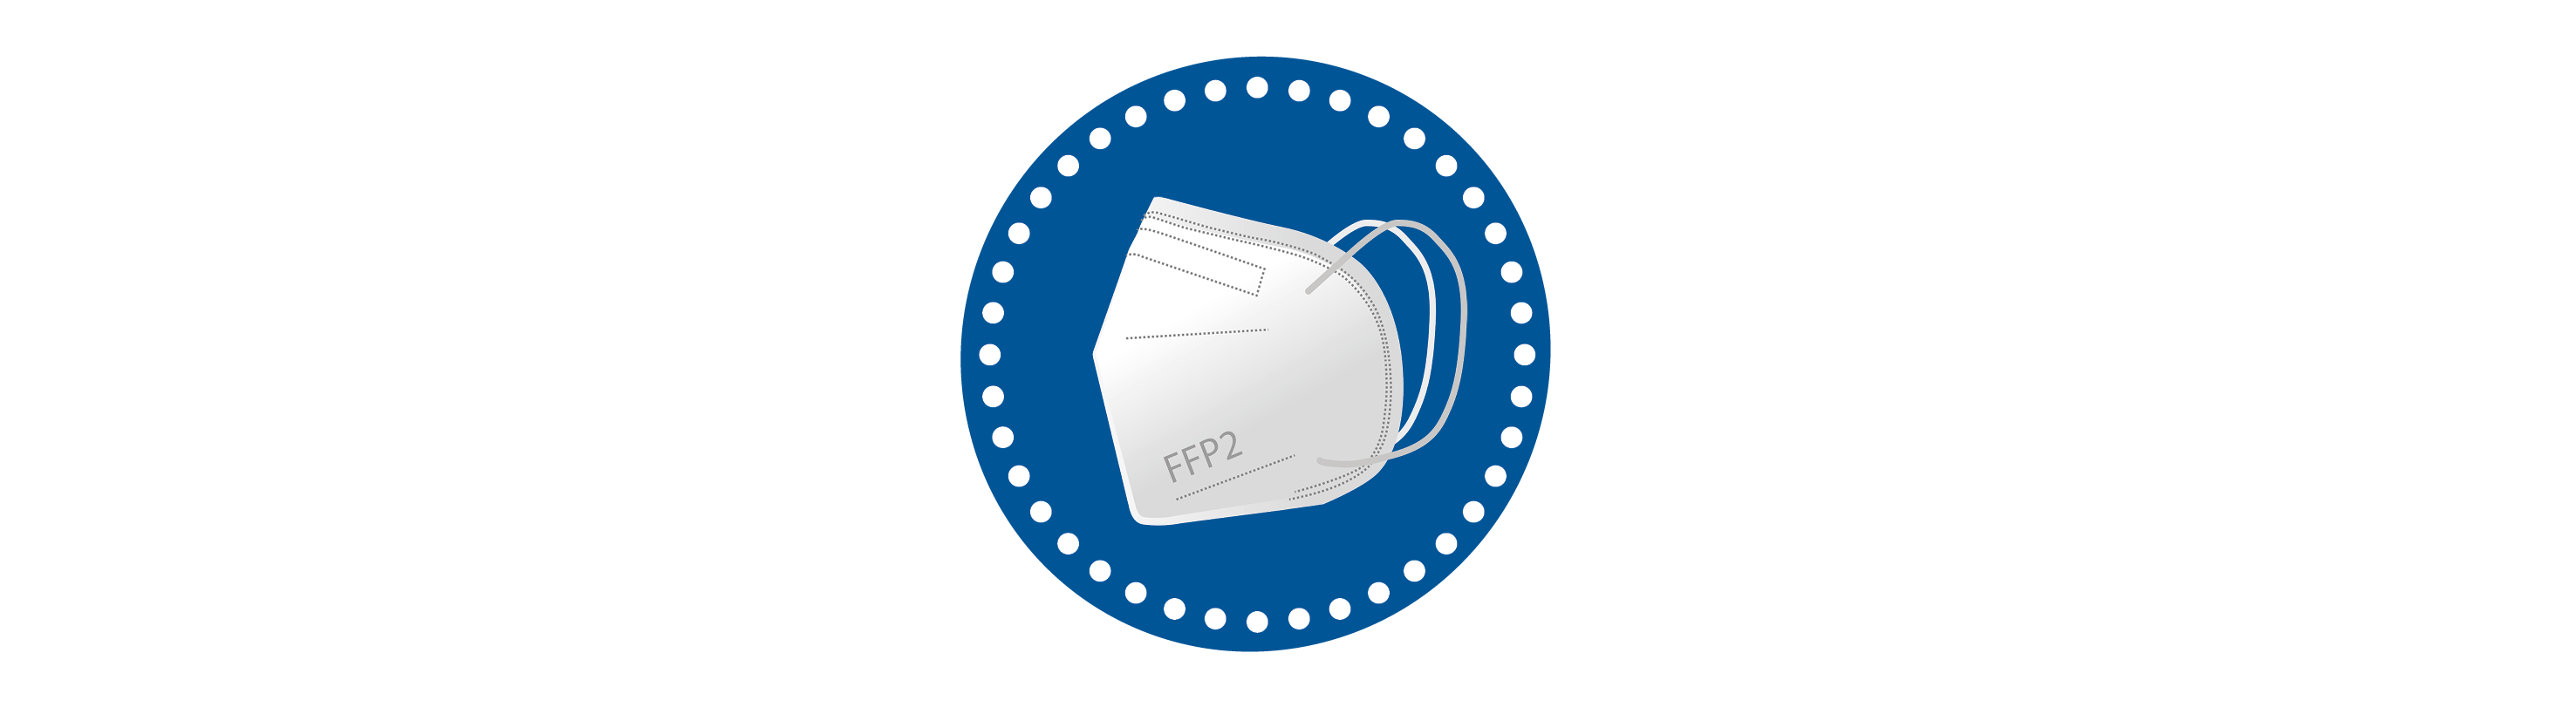 FFP2-Maskenpflicht